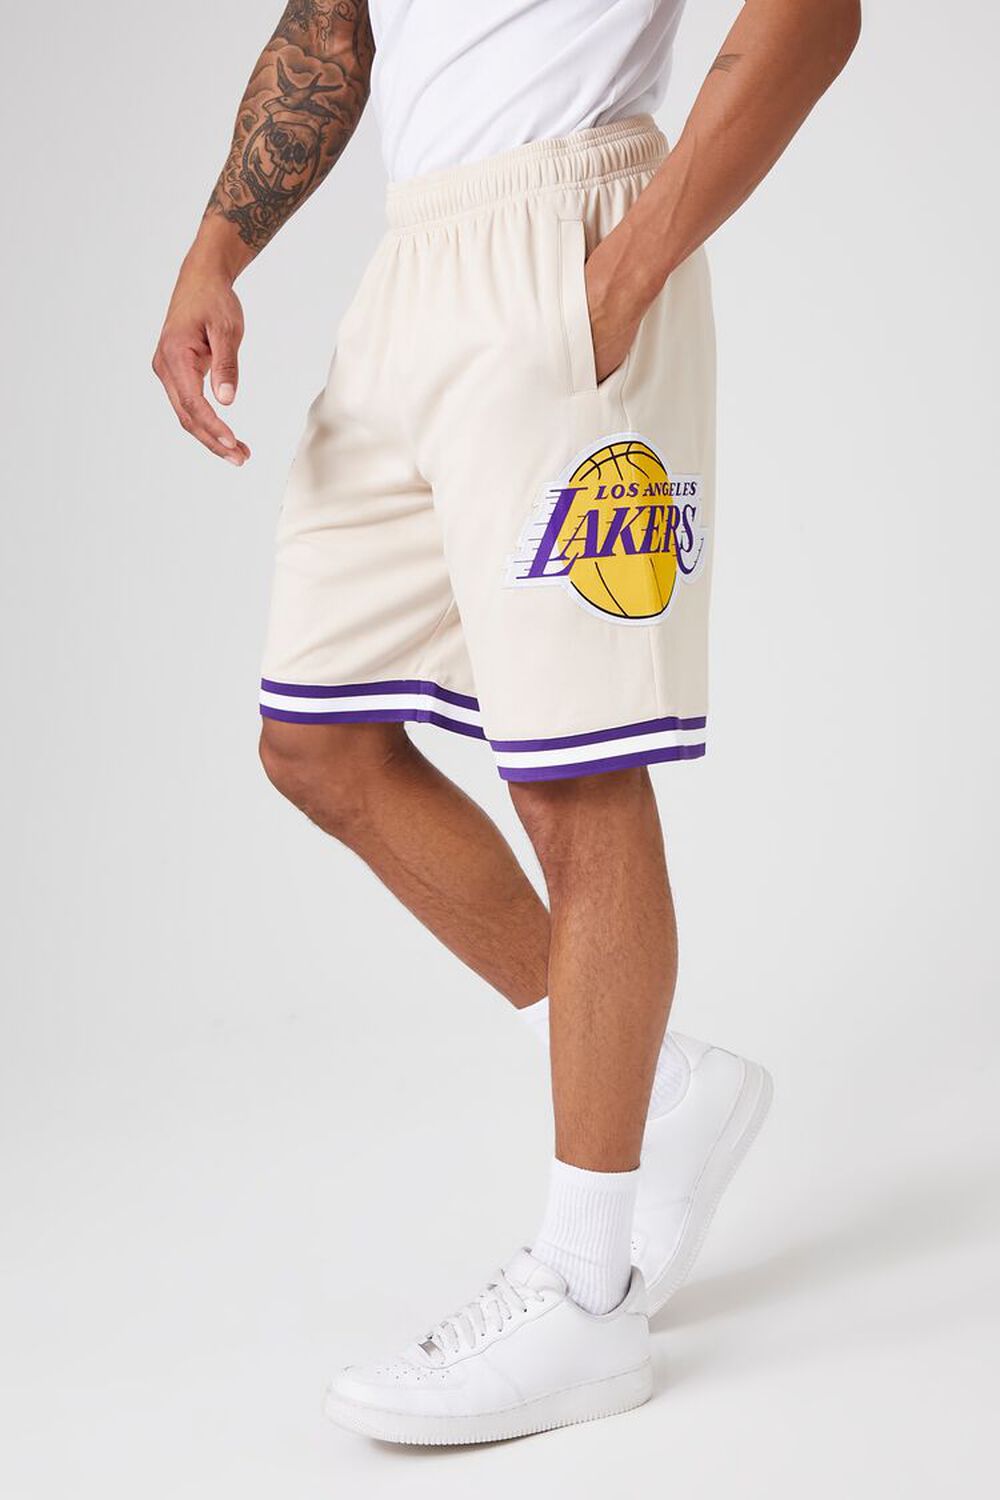 Los Angeles Lakers Shorts, Lakers Basketball Shorts, Running Shorts